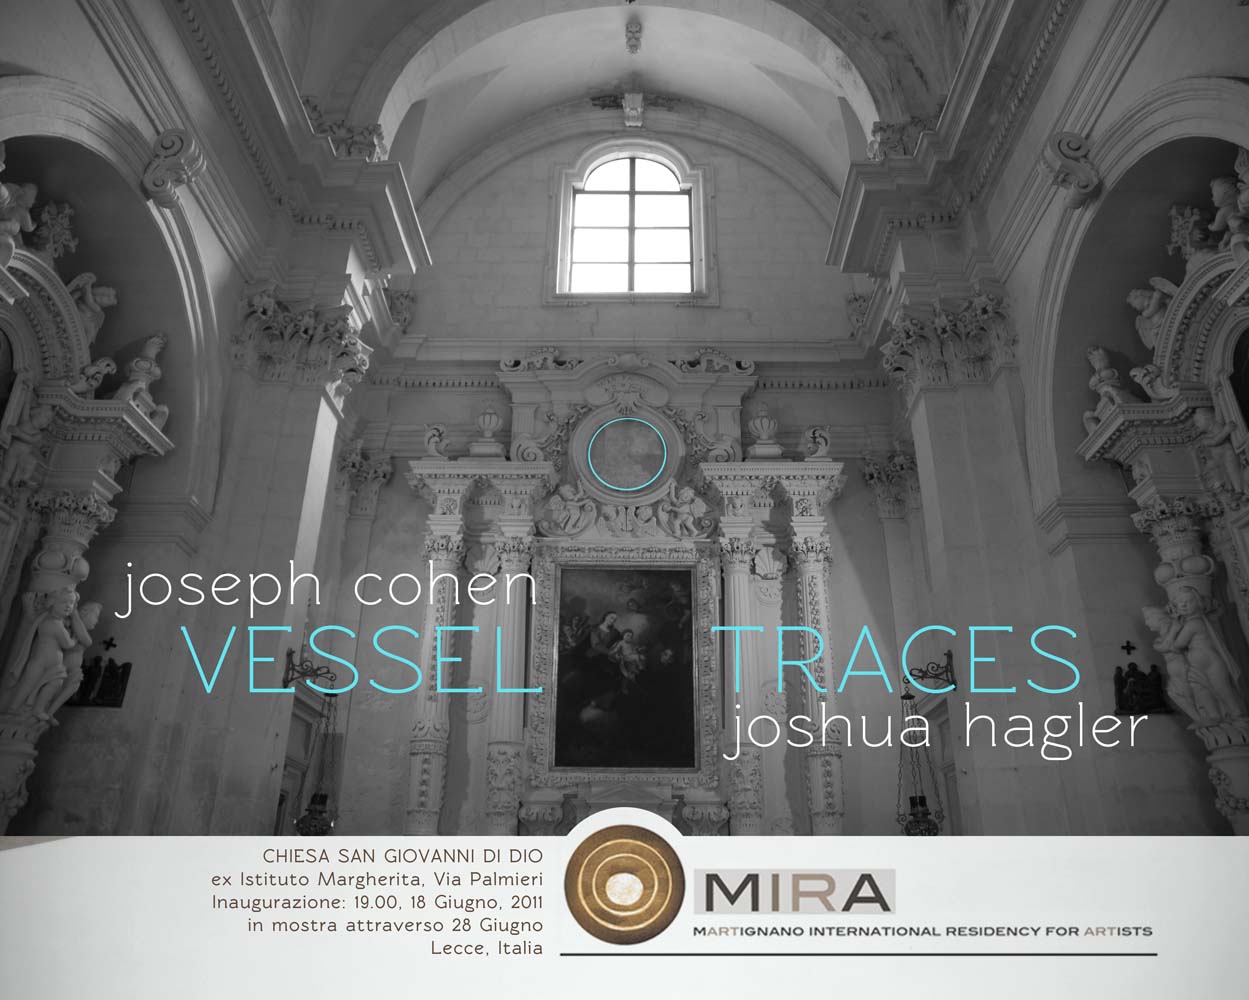 Joseph Cohen / Joshua Hagler - Vessell Traces